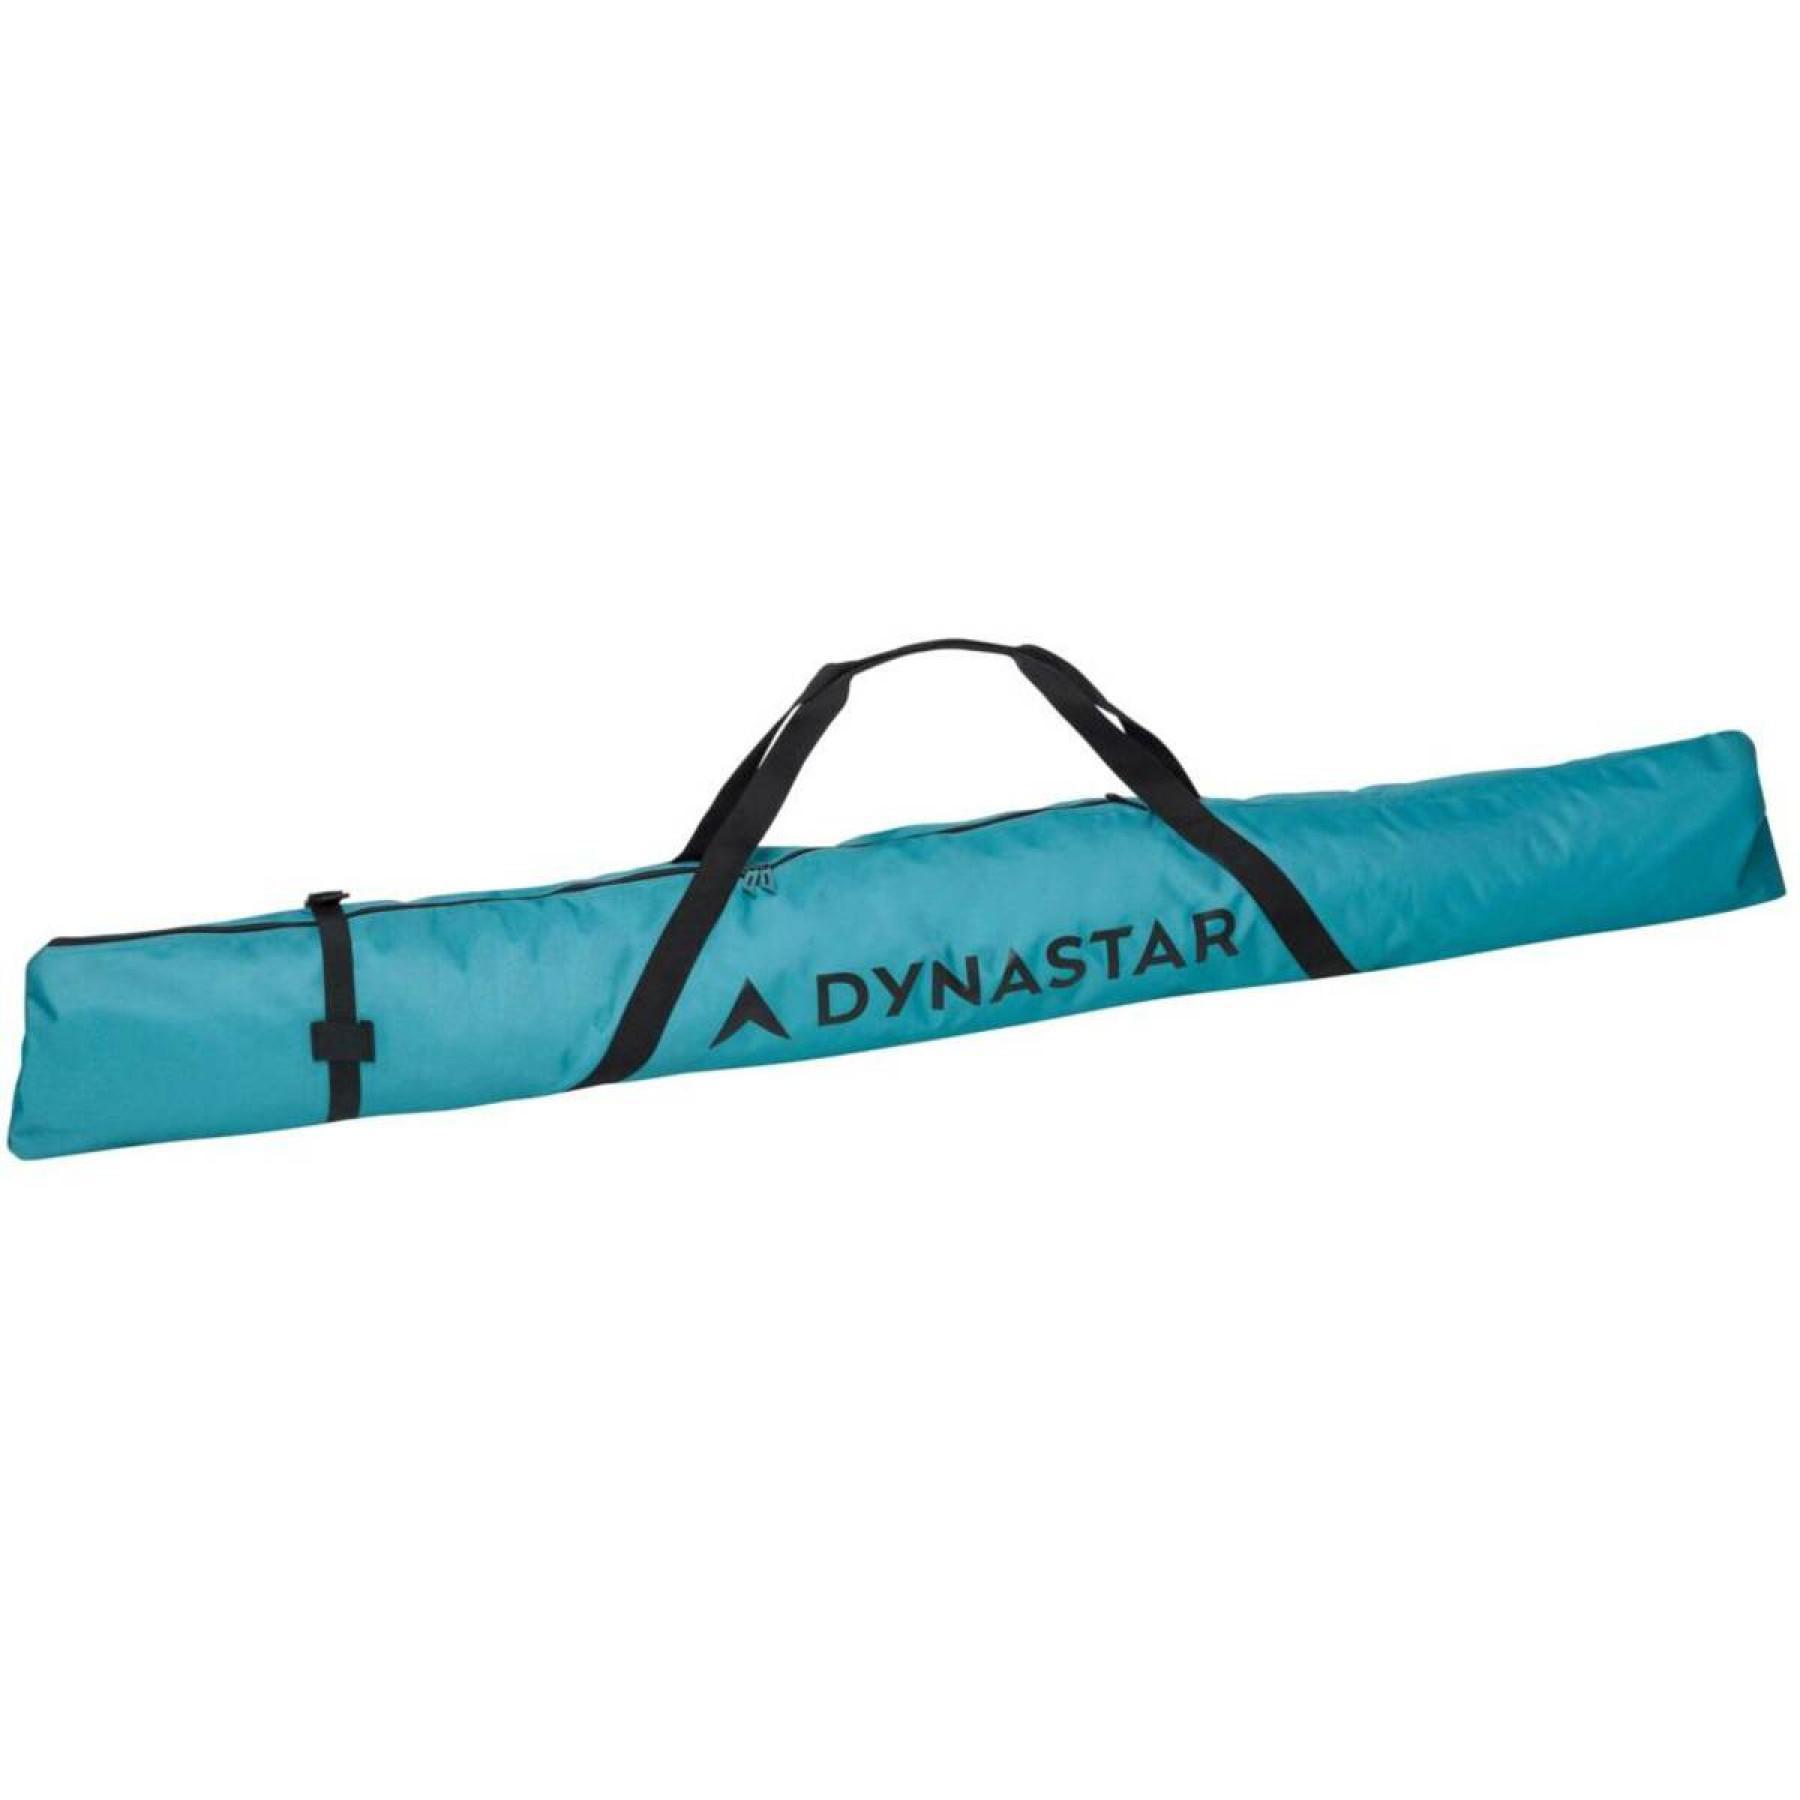 Damska torba na narty Dynastar intense basic 160 cm